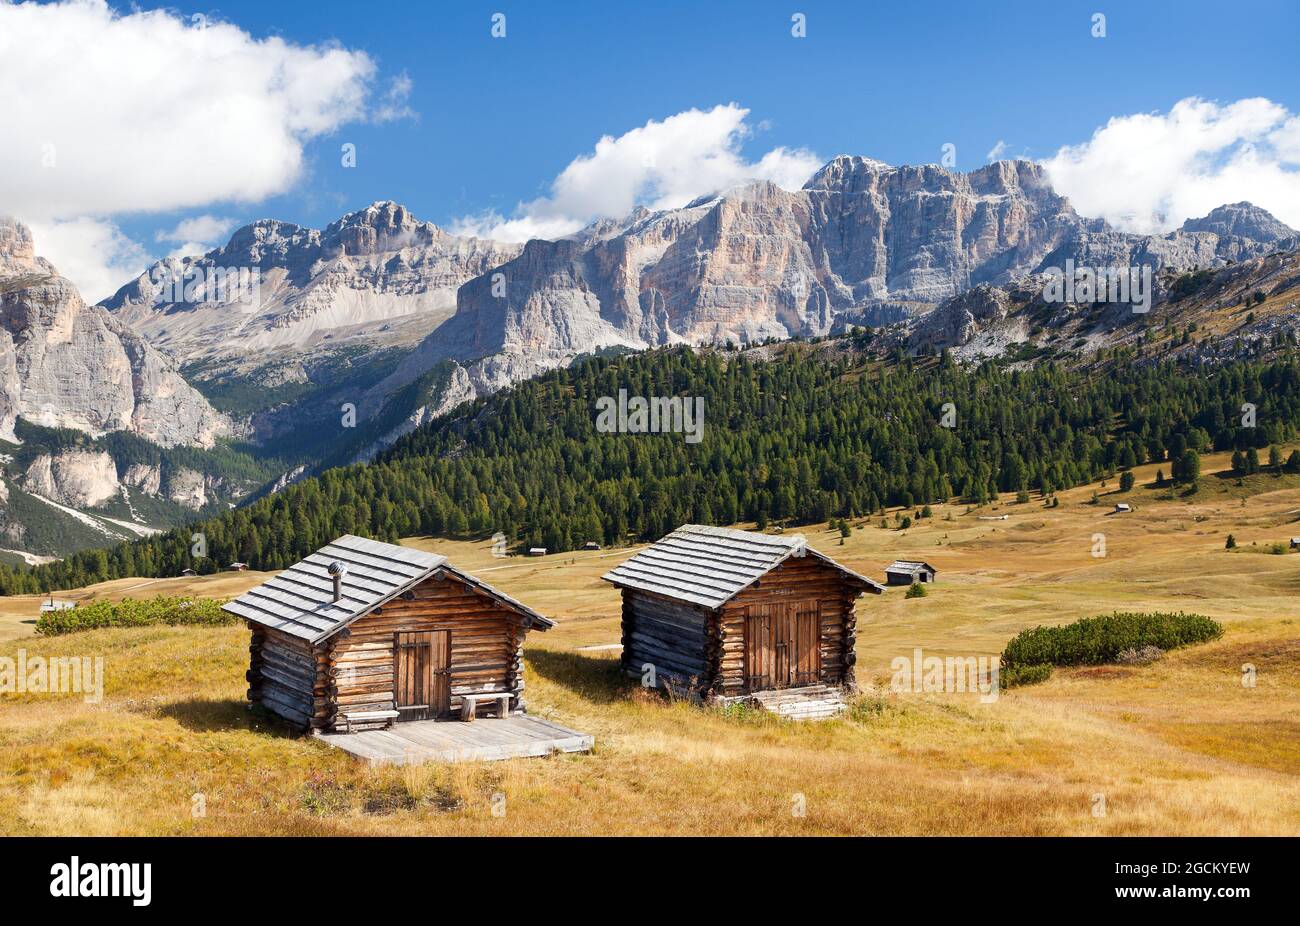 wooden small cabin in dolomities alps mountains, Italian dolomiti, Italy Stock Photo